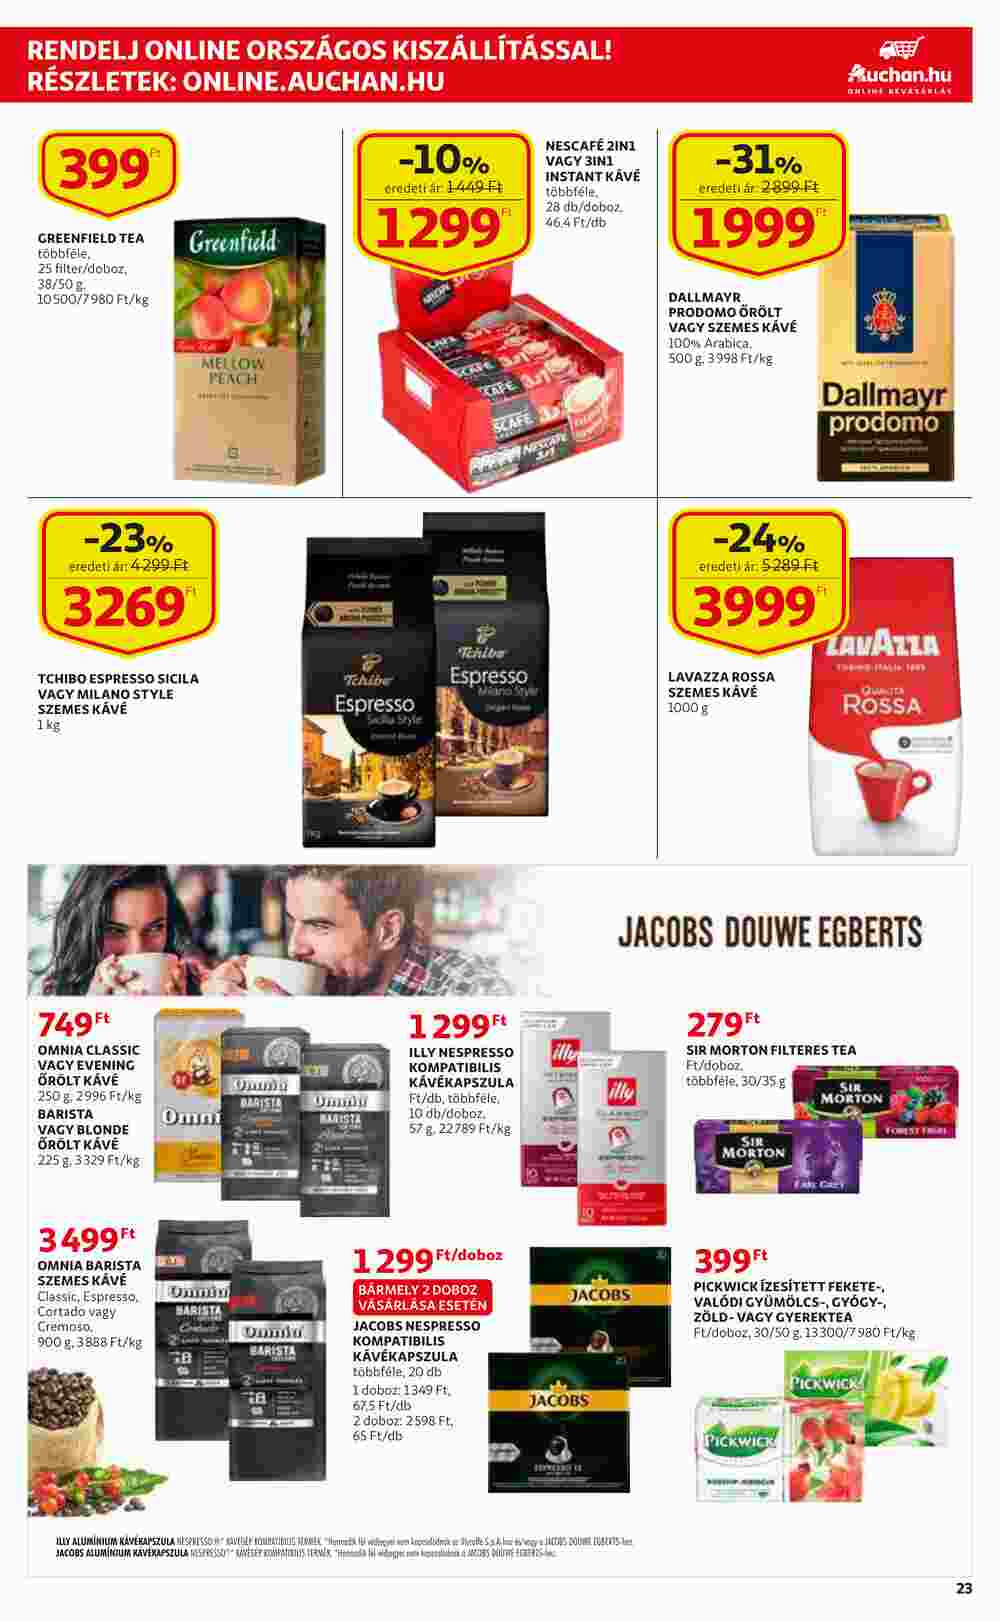 Auchan akciós újság 2021.03.04-től - 23. oldal.